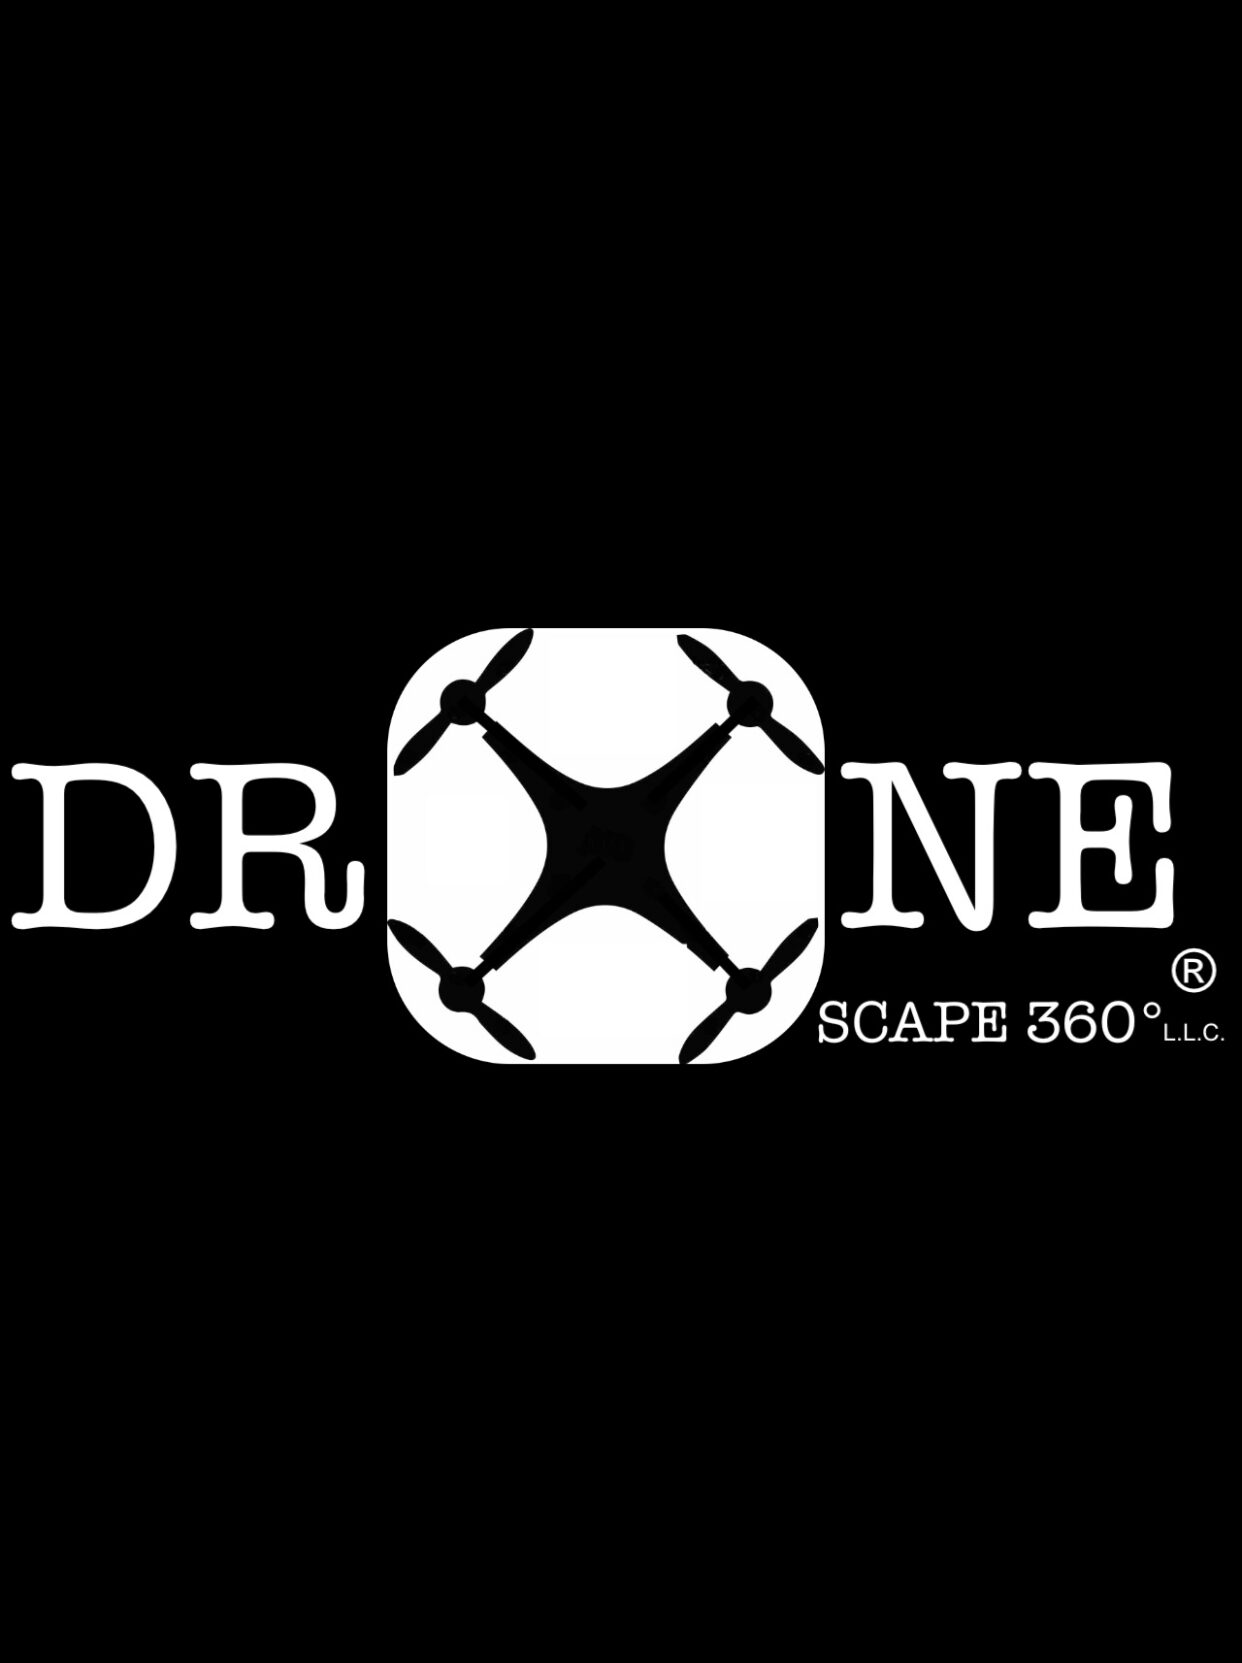 DroneScape360